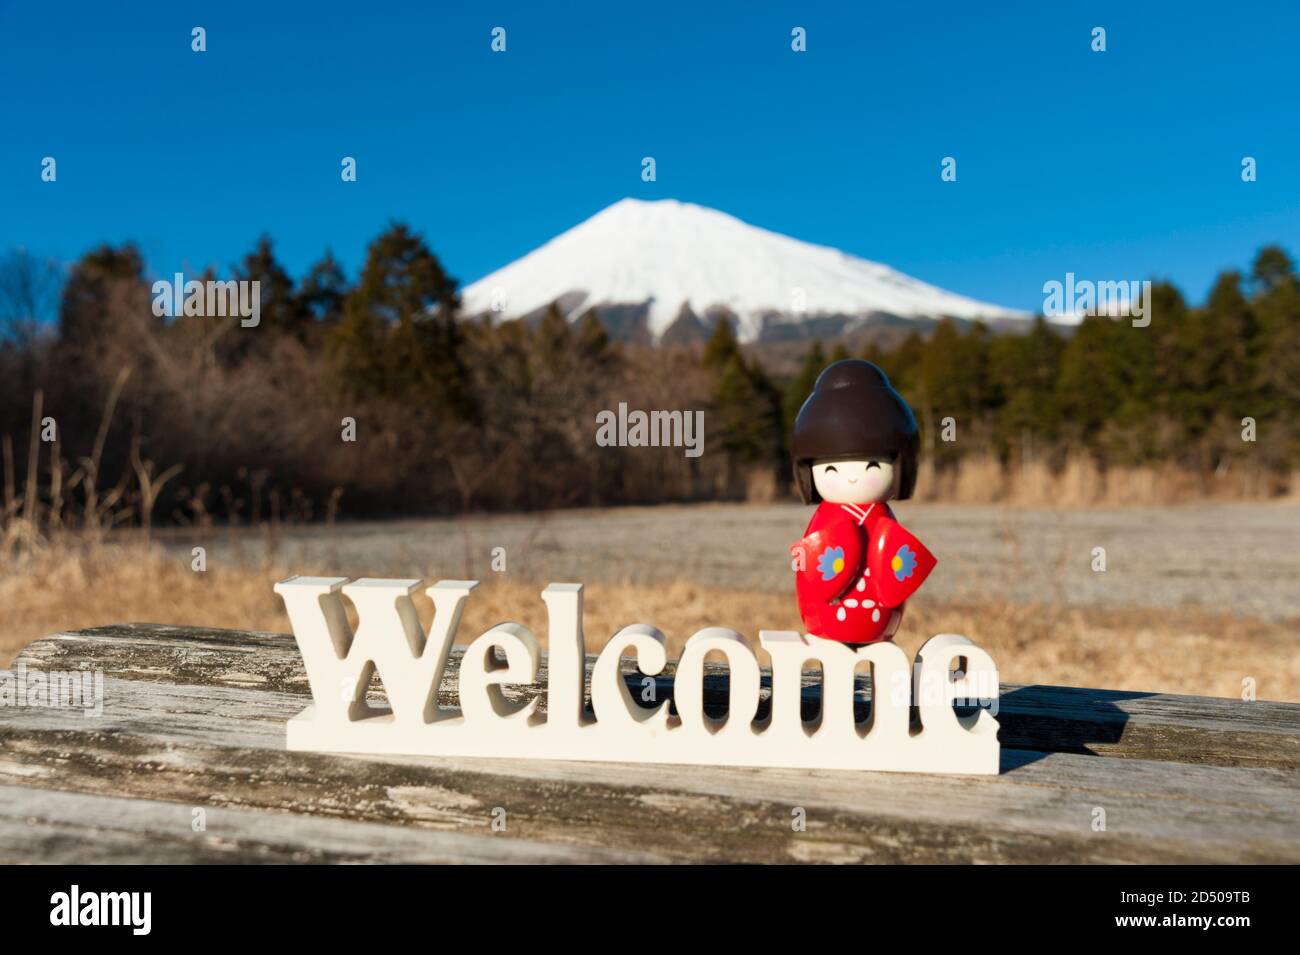 Magnifique poupée kokeshi traditionnelle japonaise vêtue de kimono rouge sur le mot 'Welcome'. Arrière-plan avec le Mont Fuji. Tir horizontal. Banque D'Images